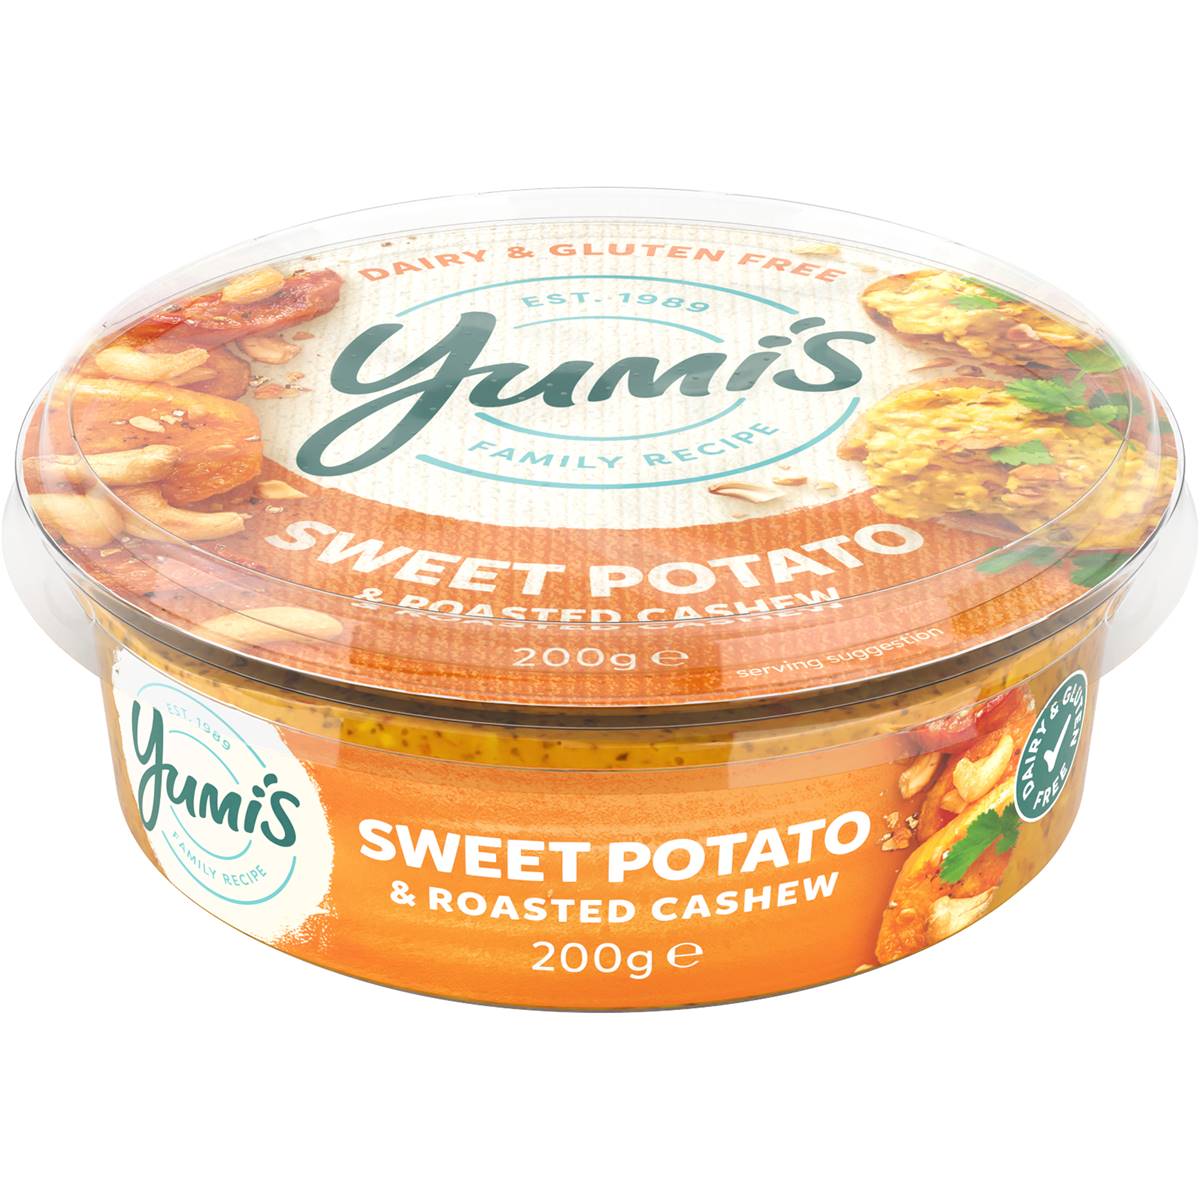 Calories in Yumi's Sweet Potato & Cashews Dip